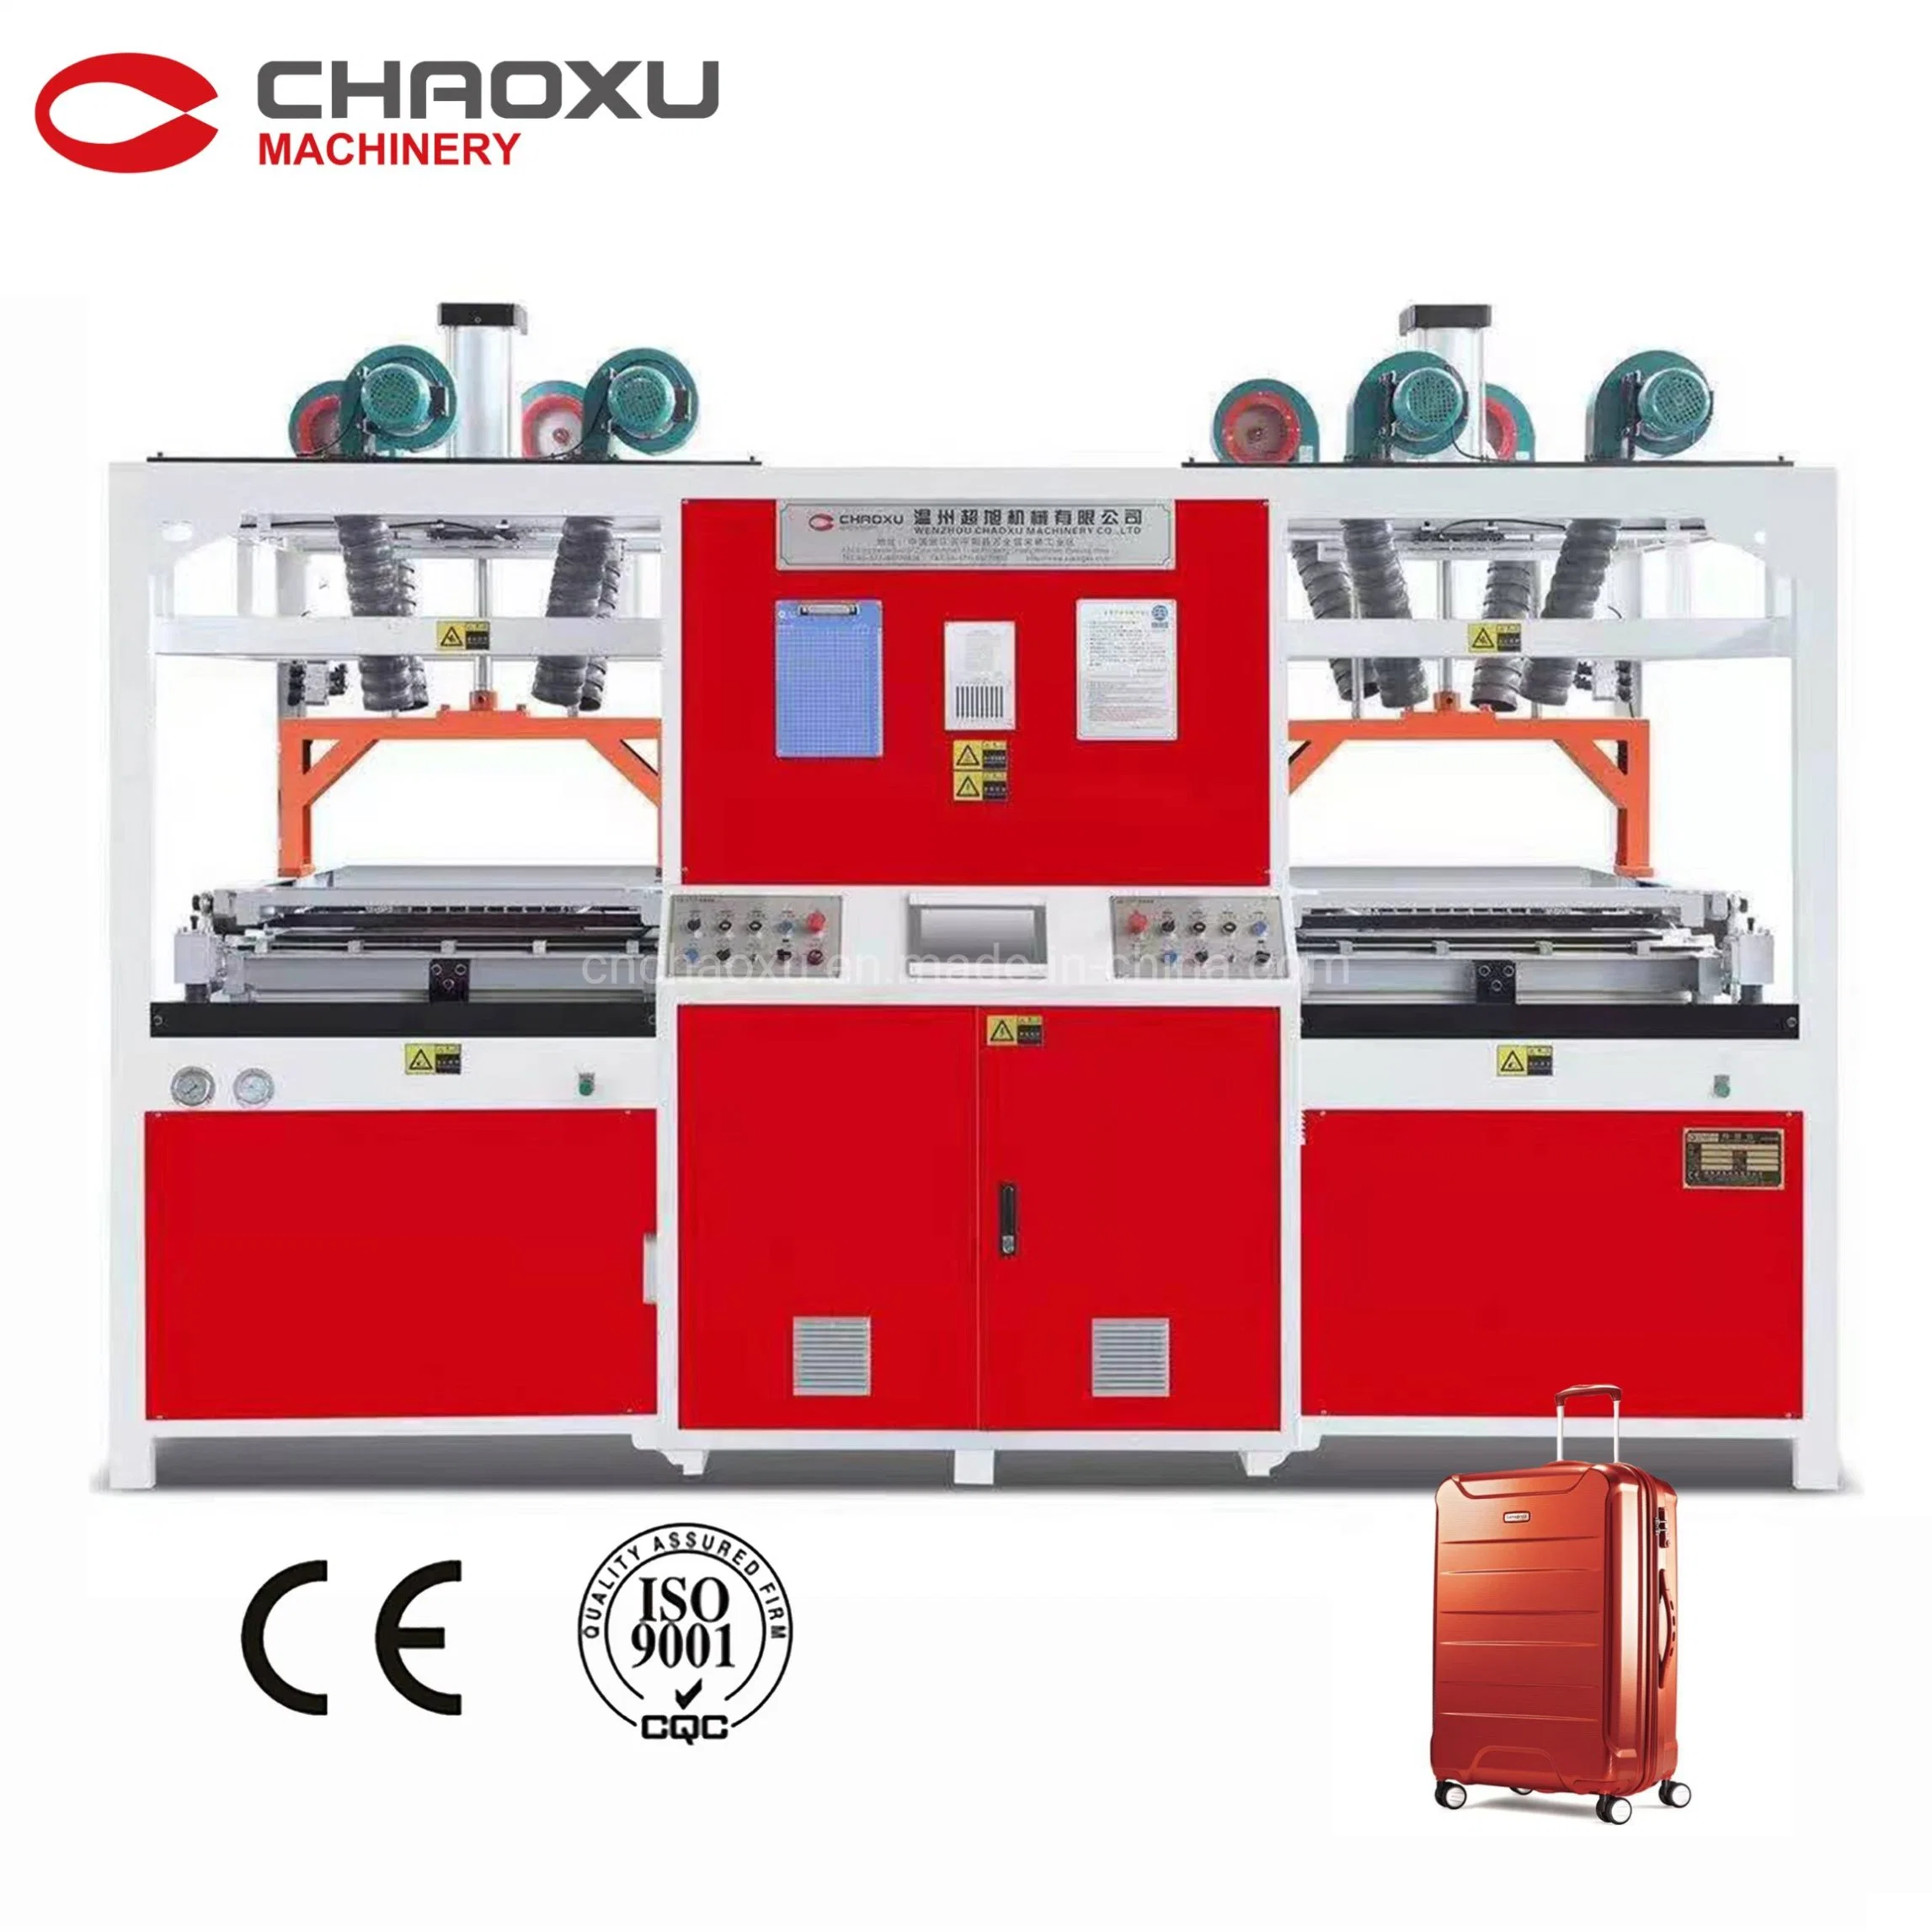 آلة تشكيل الحرارة من صنع Chaoxu الصينية